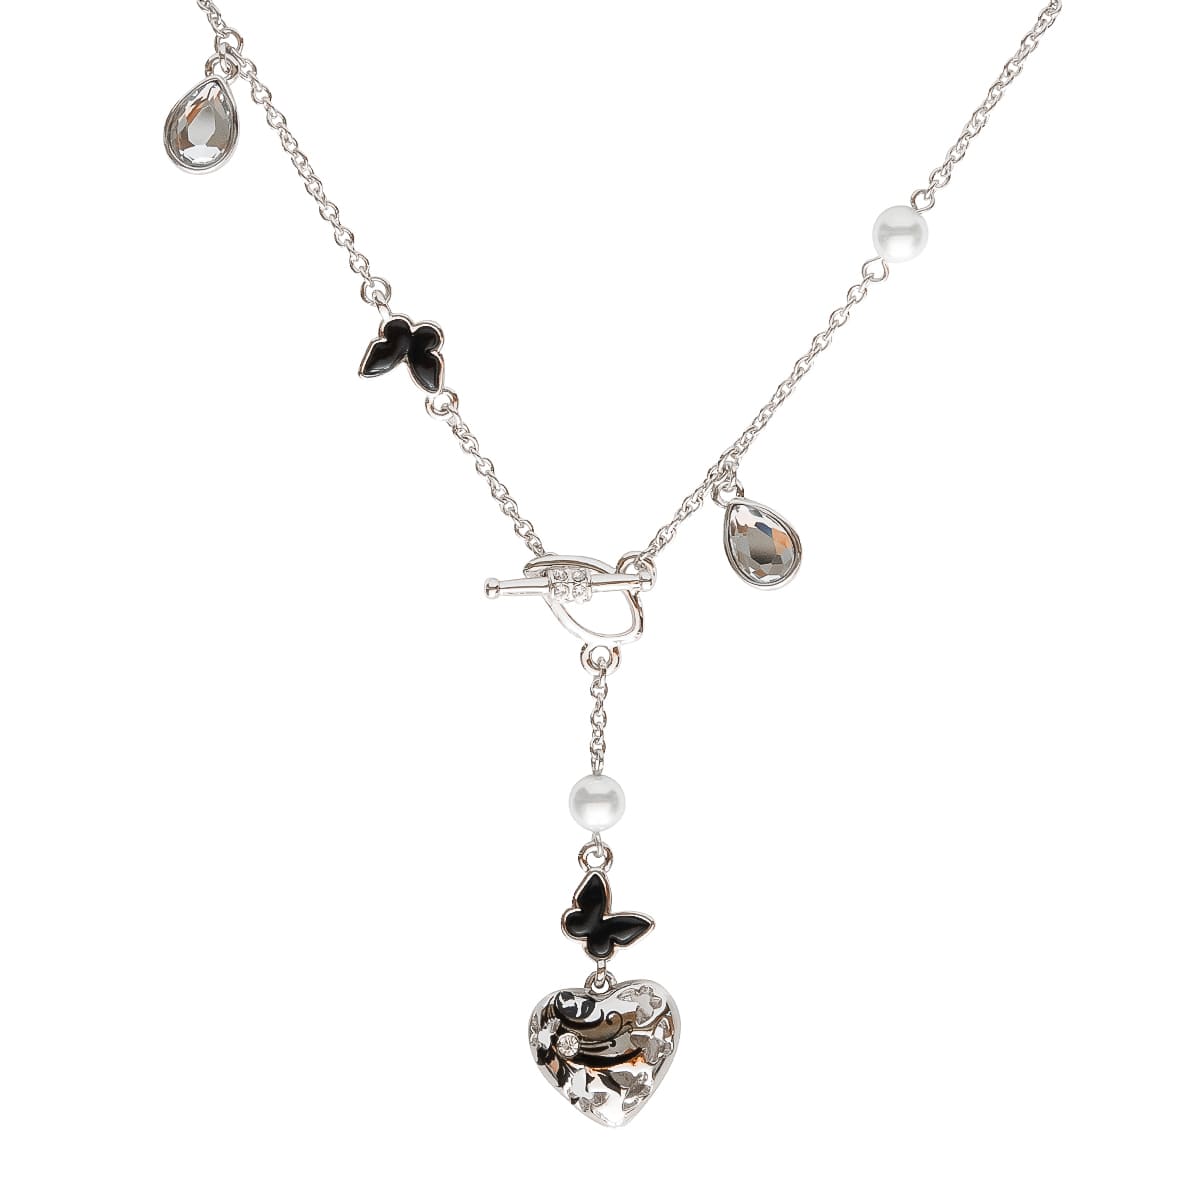 K.V. Fuchs Design Schmuck Damen Halskette in silber mit Schmetterlingen in schwarz und verzierter Anhänger Herz mit Zirkonia in weiß »K-2925«